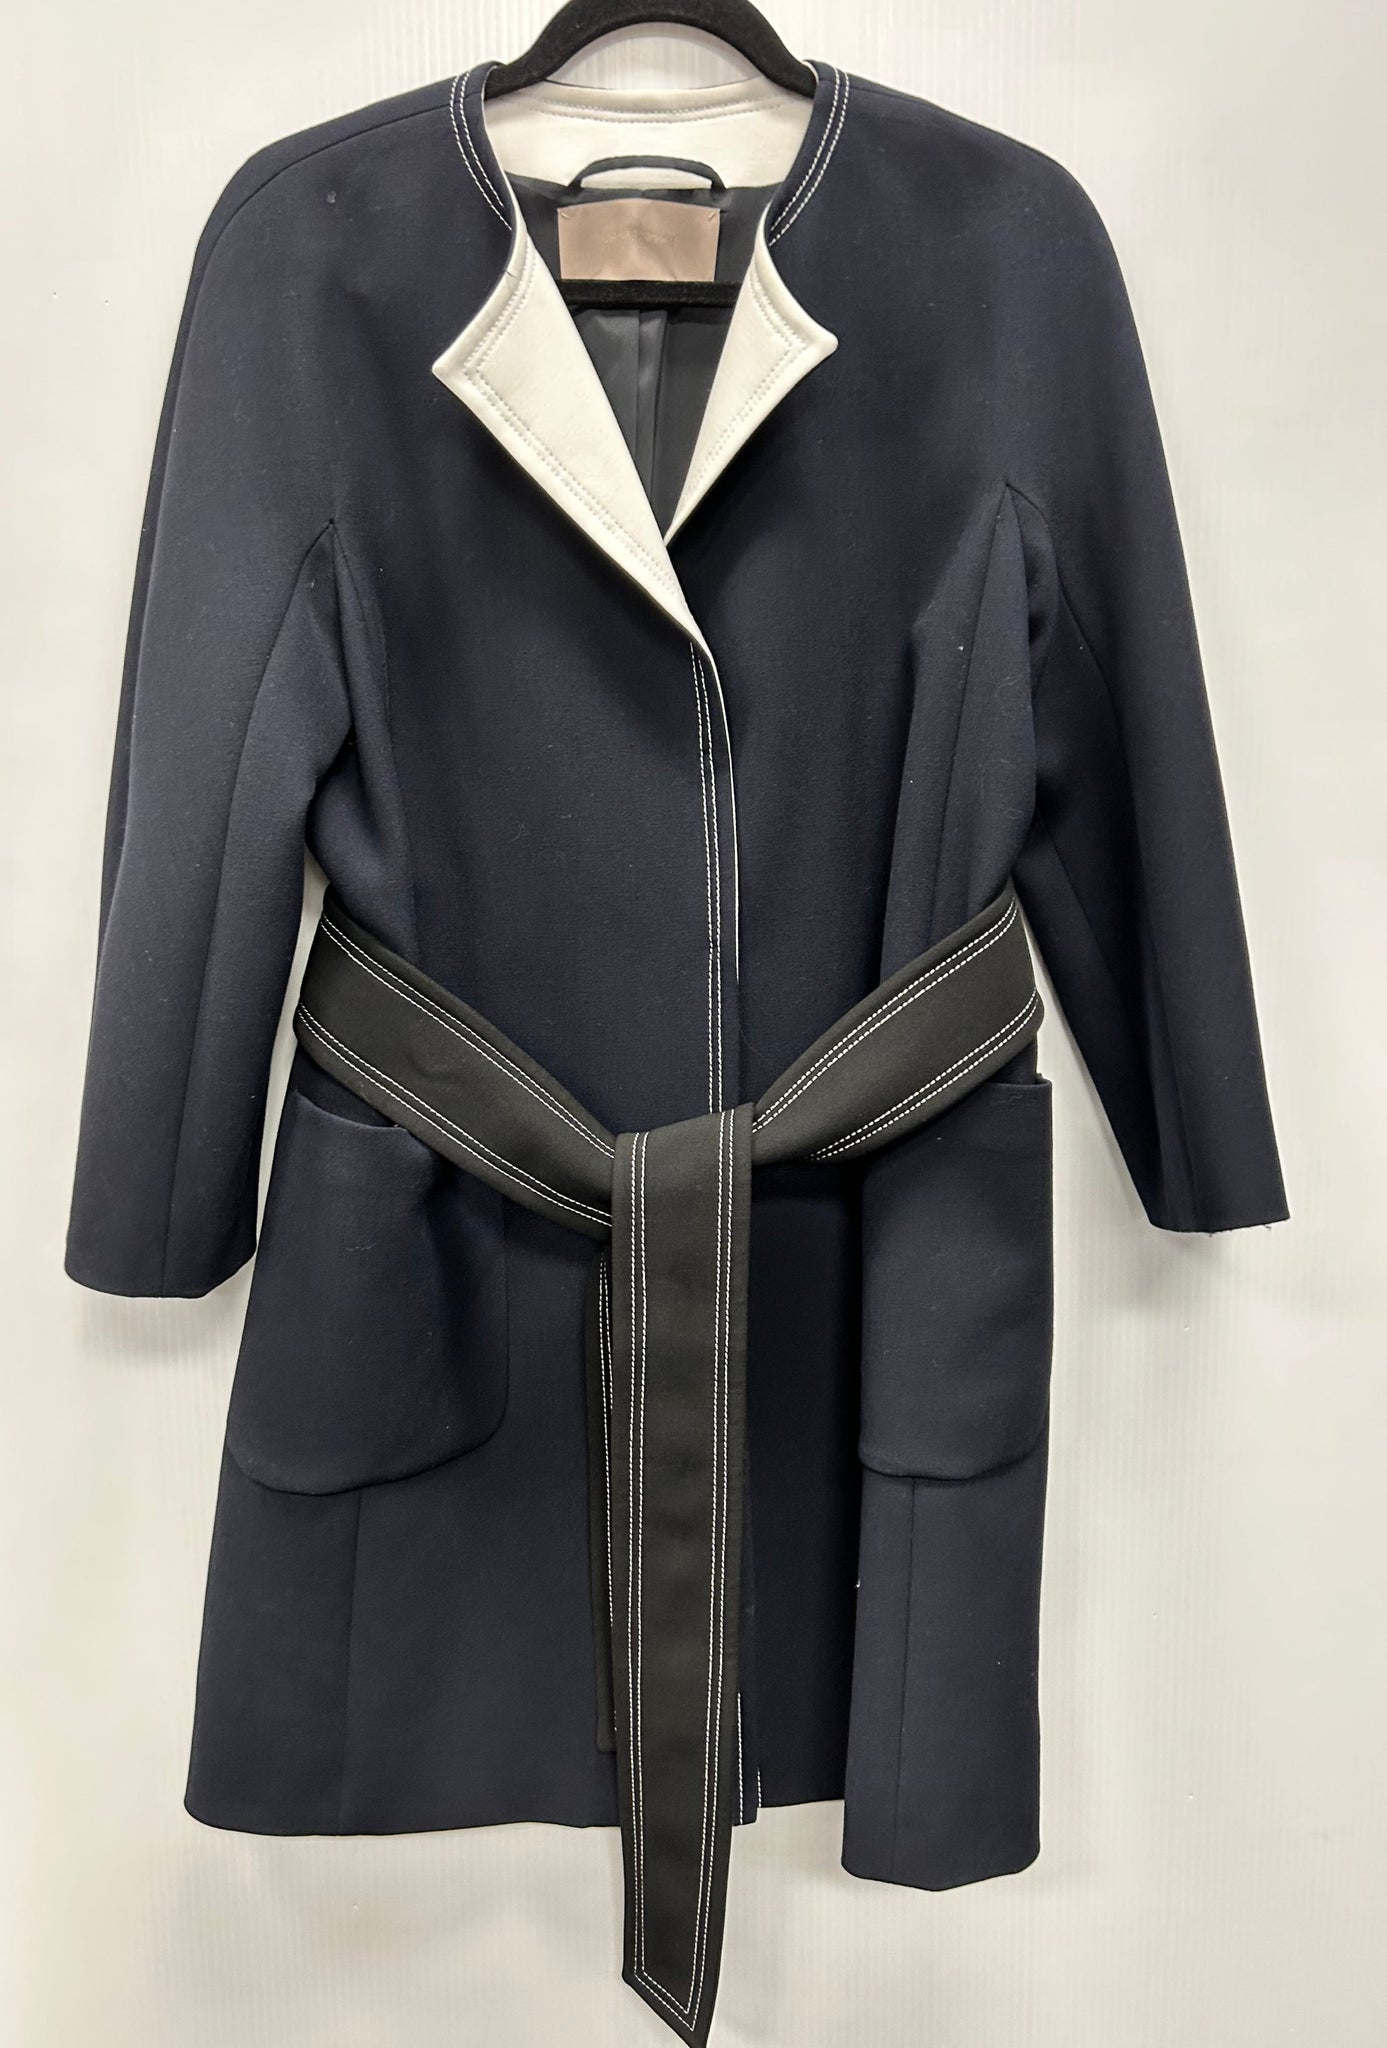 Size M/L Georges Rech Paris Jacket #0083